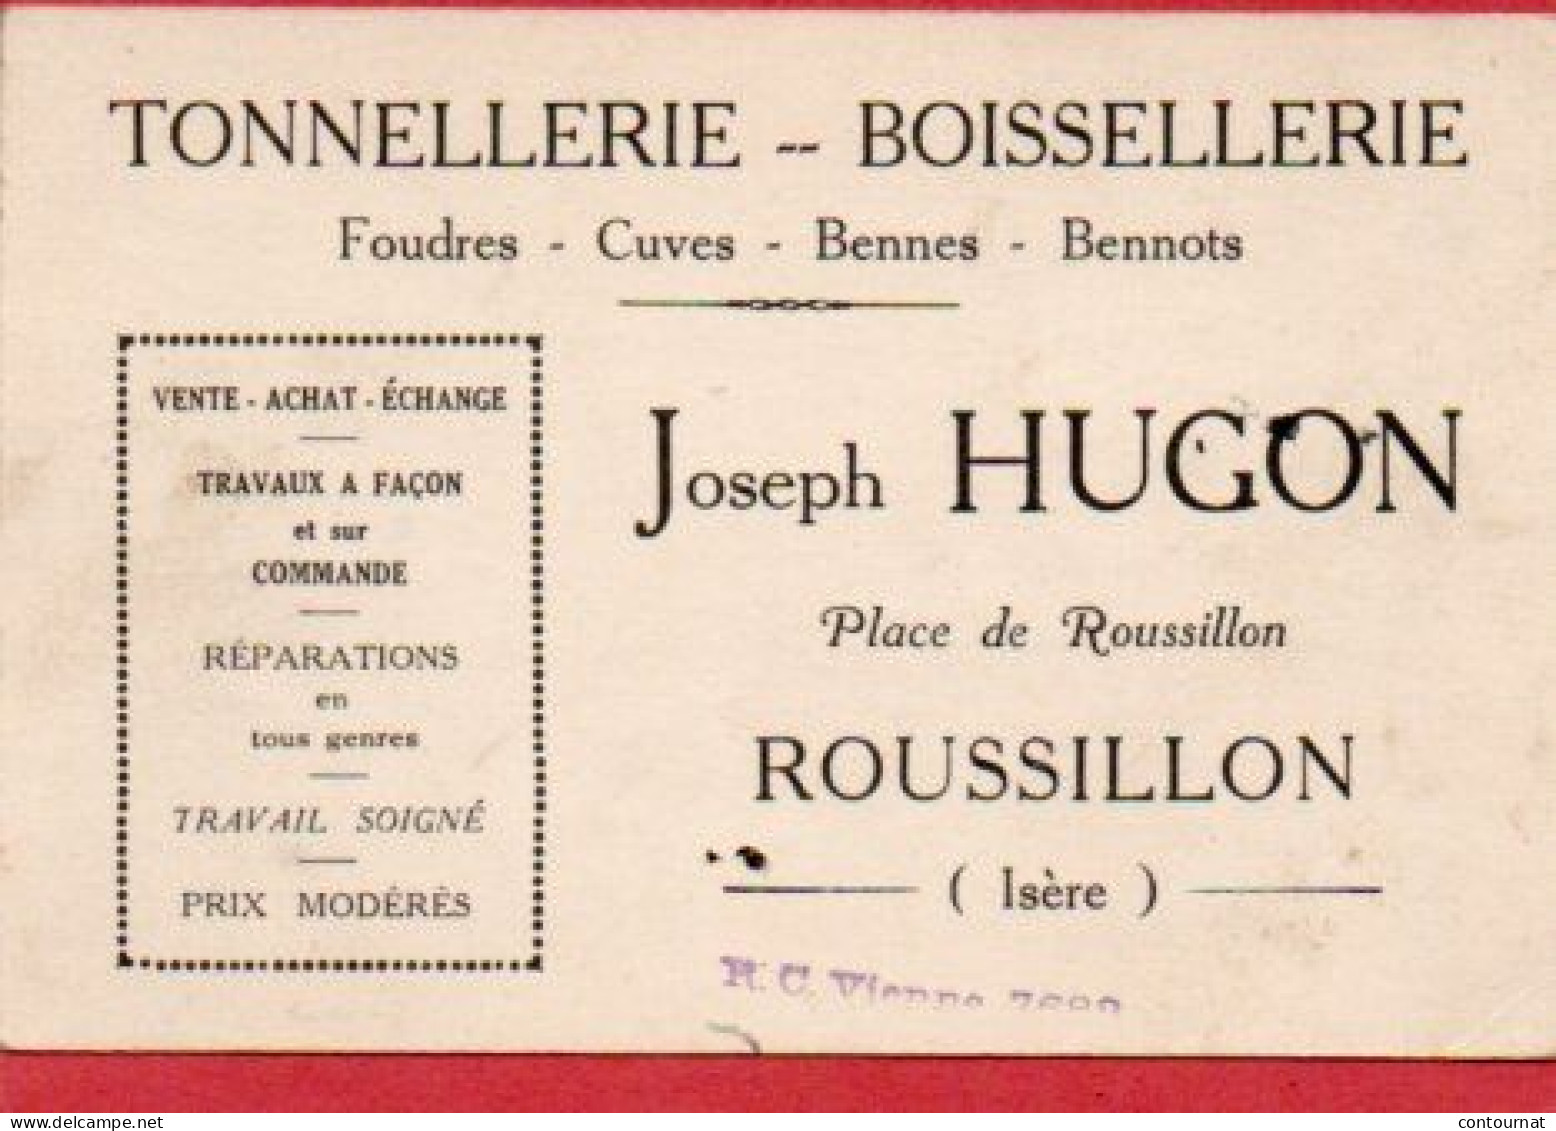 Carte De Visite 38 ISERE ROUSSILLON Tonnellerie Boissellerie Joseph HUGON - F3 - Cartes De Visite